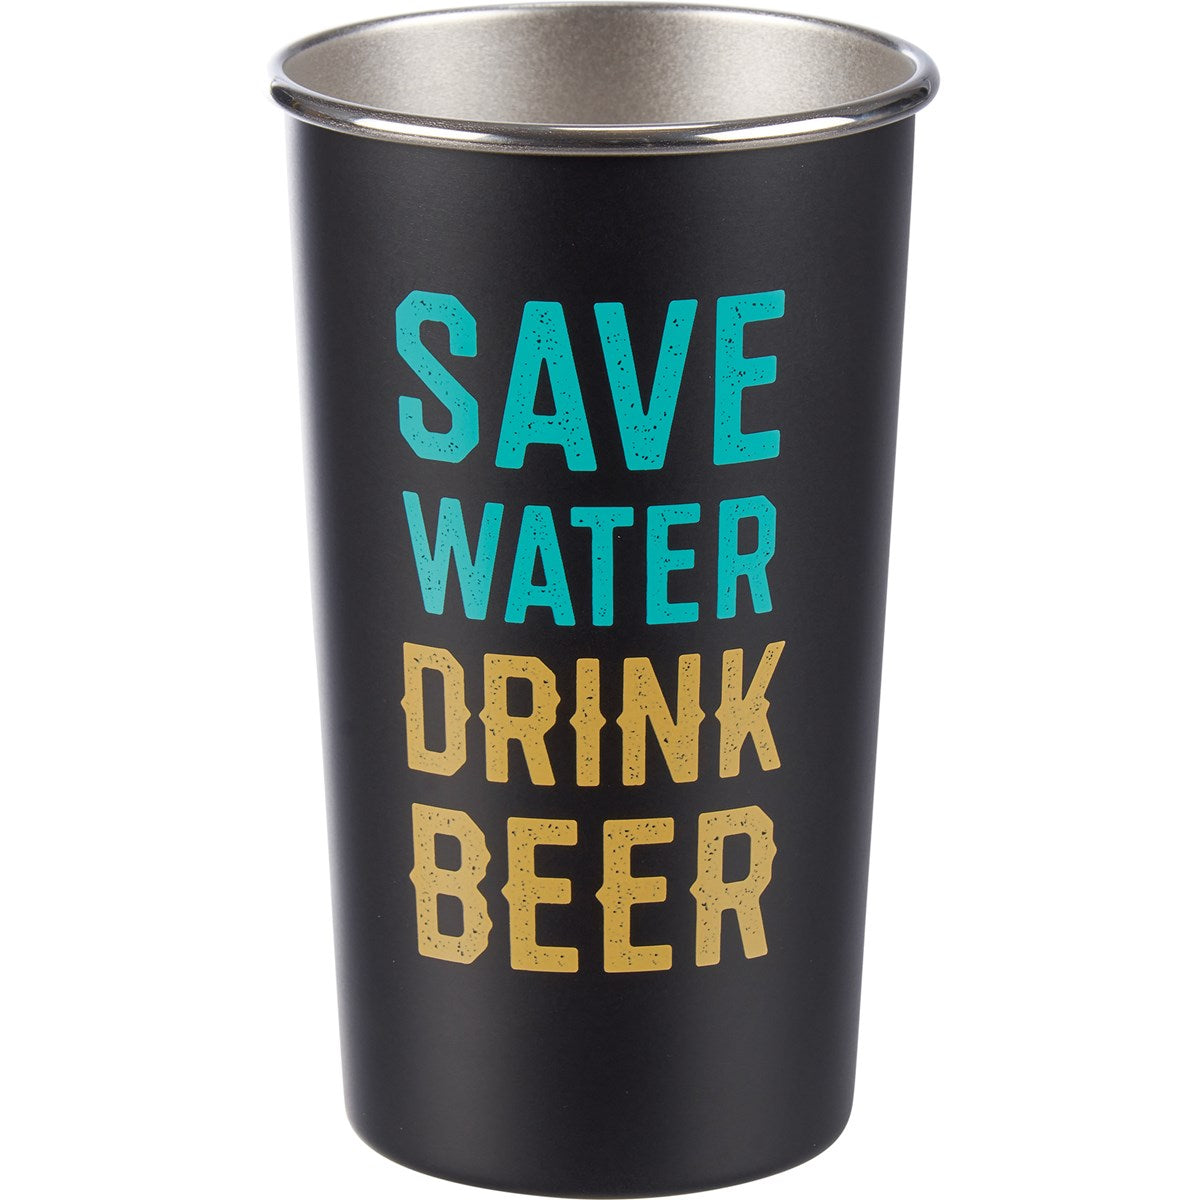 "SAVE WATER DRINK BEER" BEER TUMBLER